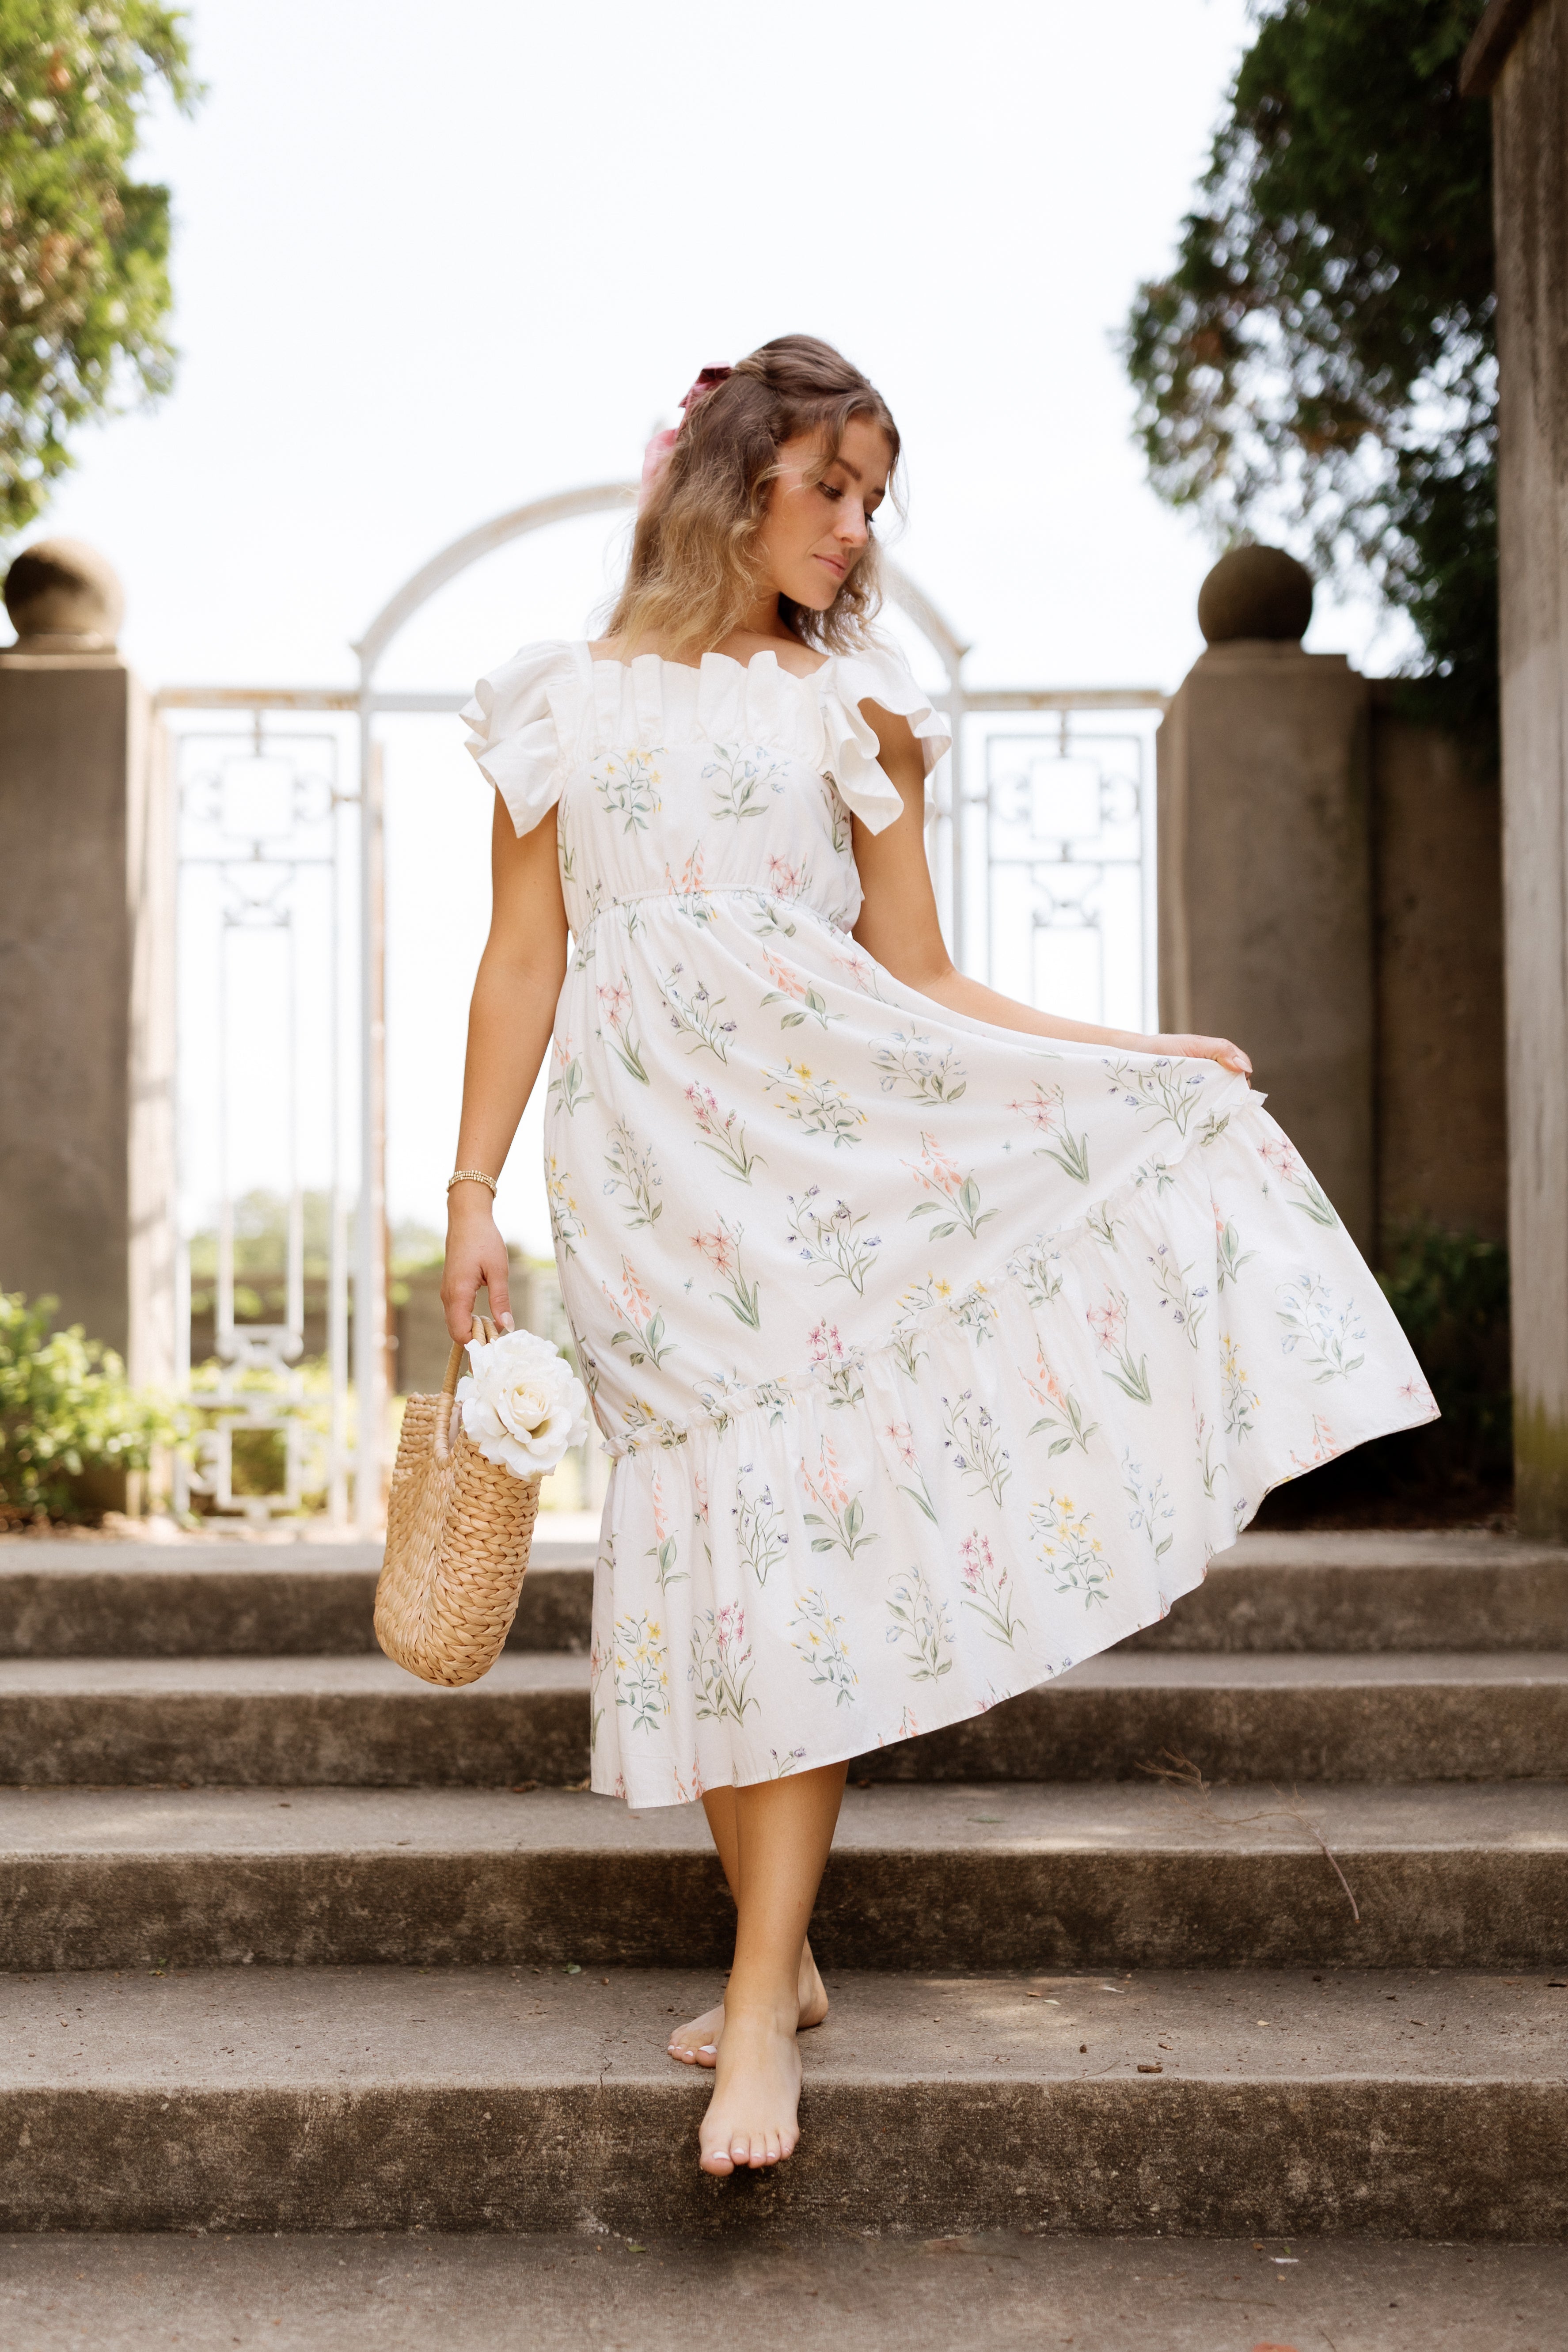 The Elle Dress by Floraison